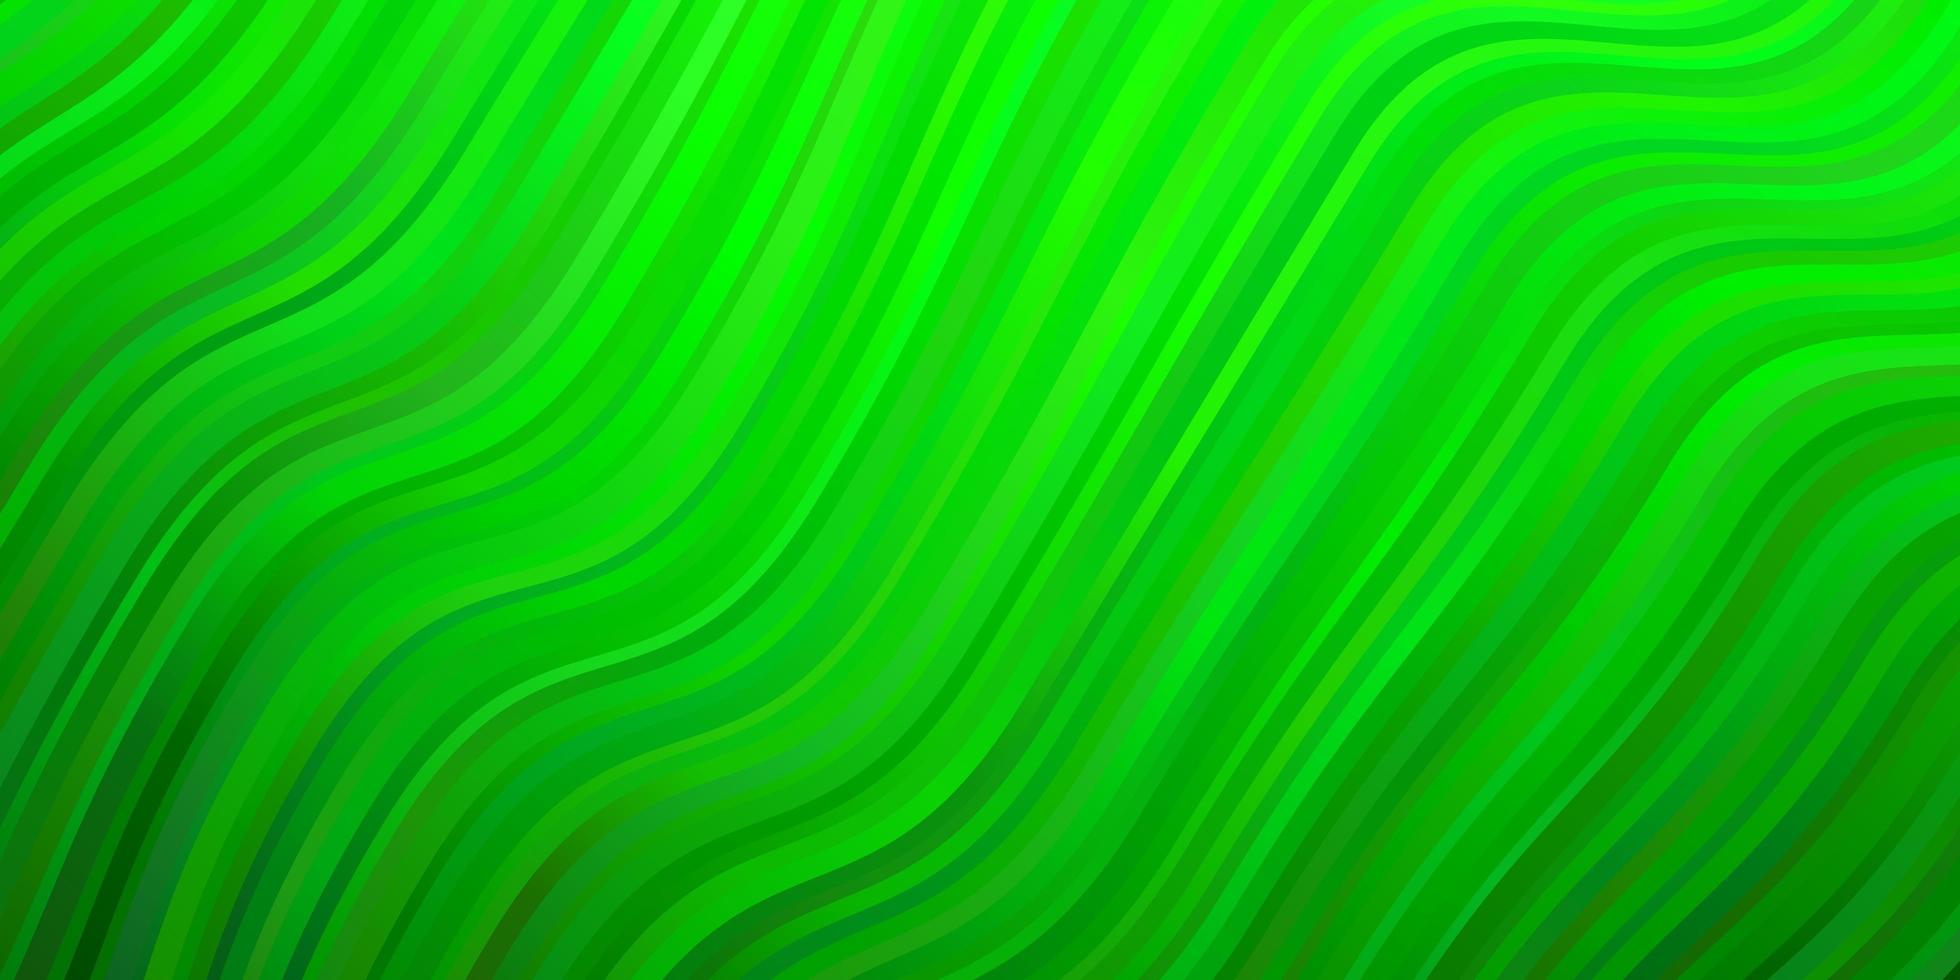 ljusgrön layout med kurvor. vektor